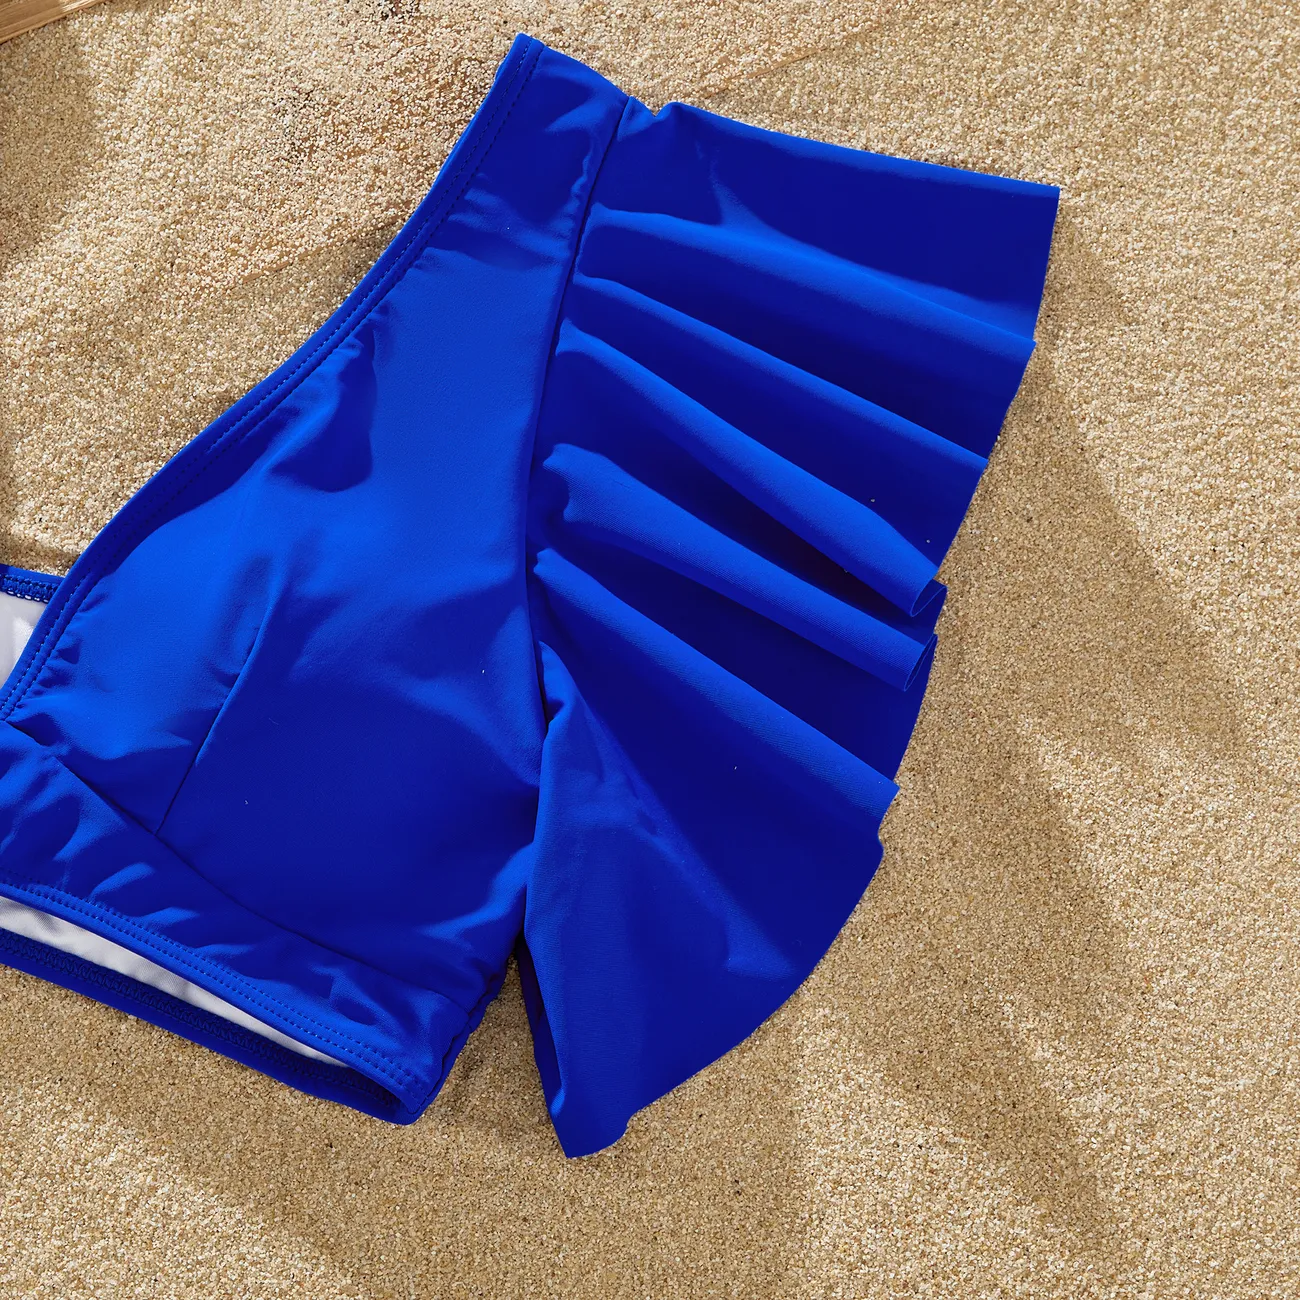 ملابس السباحة إطلالة العائلة للجنسين كم فضفاض بكشكشة لون سادة أزرق big image 1